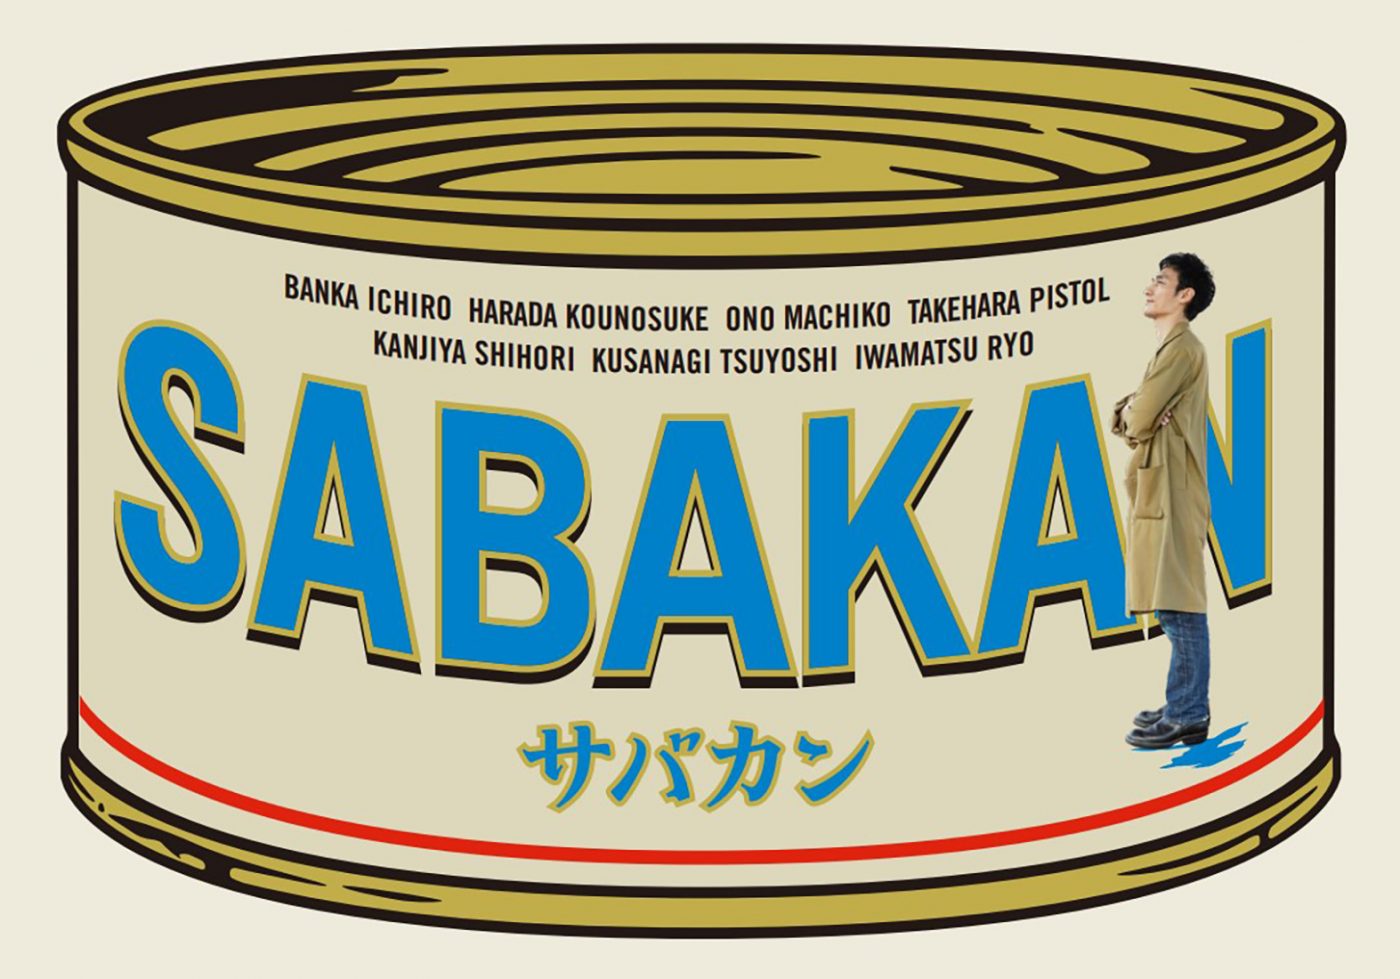 草なぎ剛出演！映画『サバカン SABAKAN』、冊子版パンフレットがスシロー限定店舗にて販売